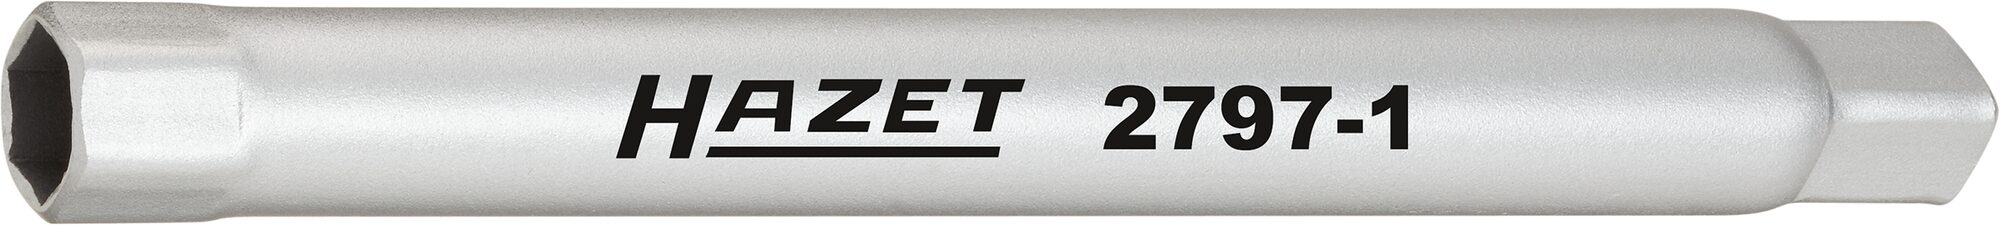 HAZET Stoßfänger Rohr-Steckschlüssel 2797-1 · Vierkant hohl 6,3 mm (1/4 Zoll) · Außen Sechskant Profil · 10 mm